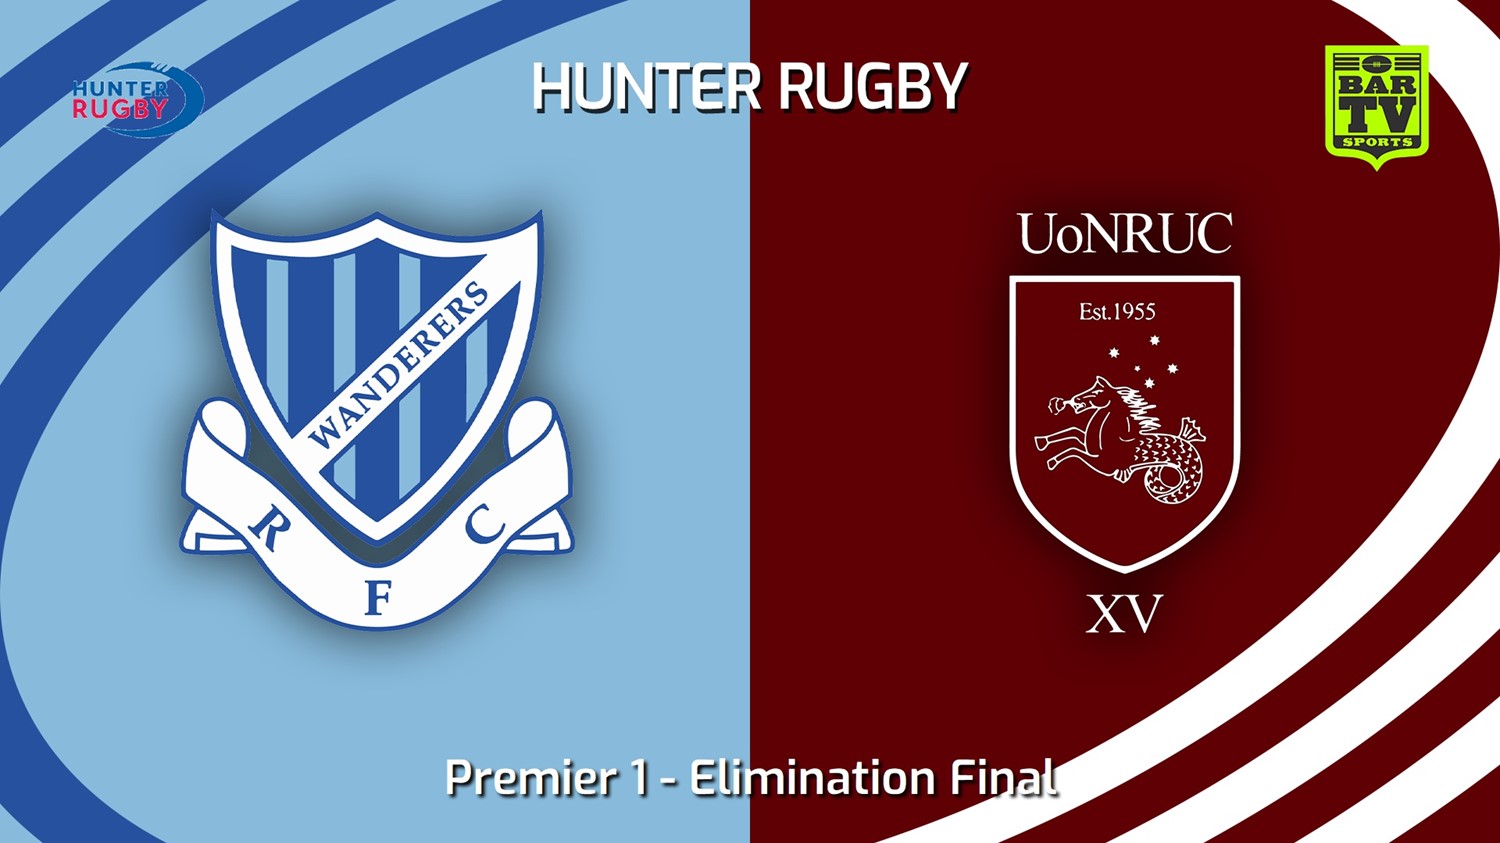 230813-Hunter Rugby Elimination Final - Premier 1 - Wanderers v University Of Newcastle Slate Image